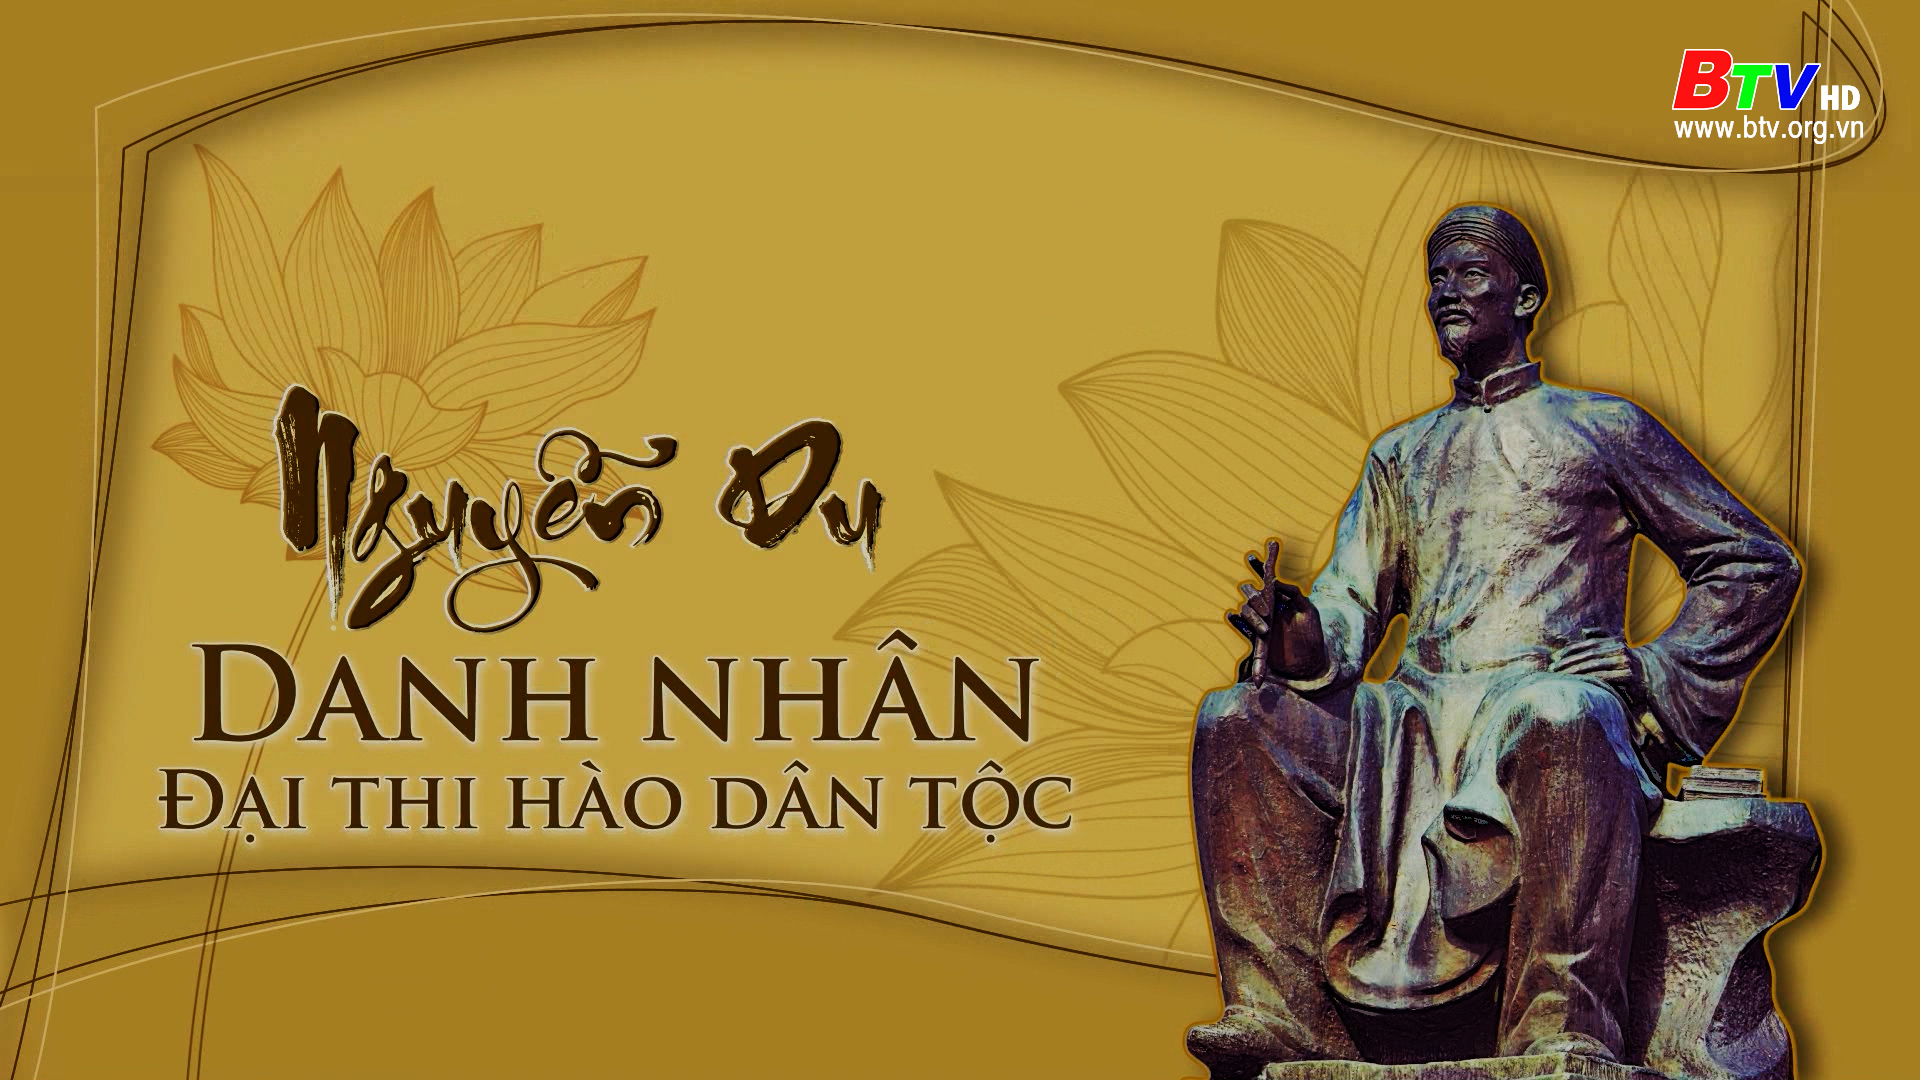 Danh nhân Nguyễn Du - Đại thi hào dân tộc